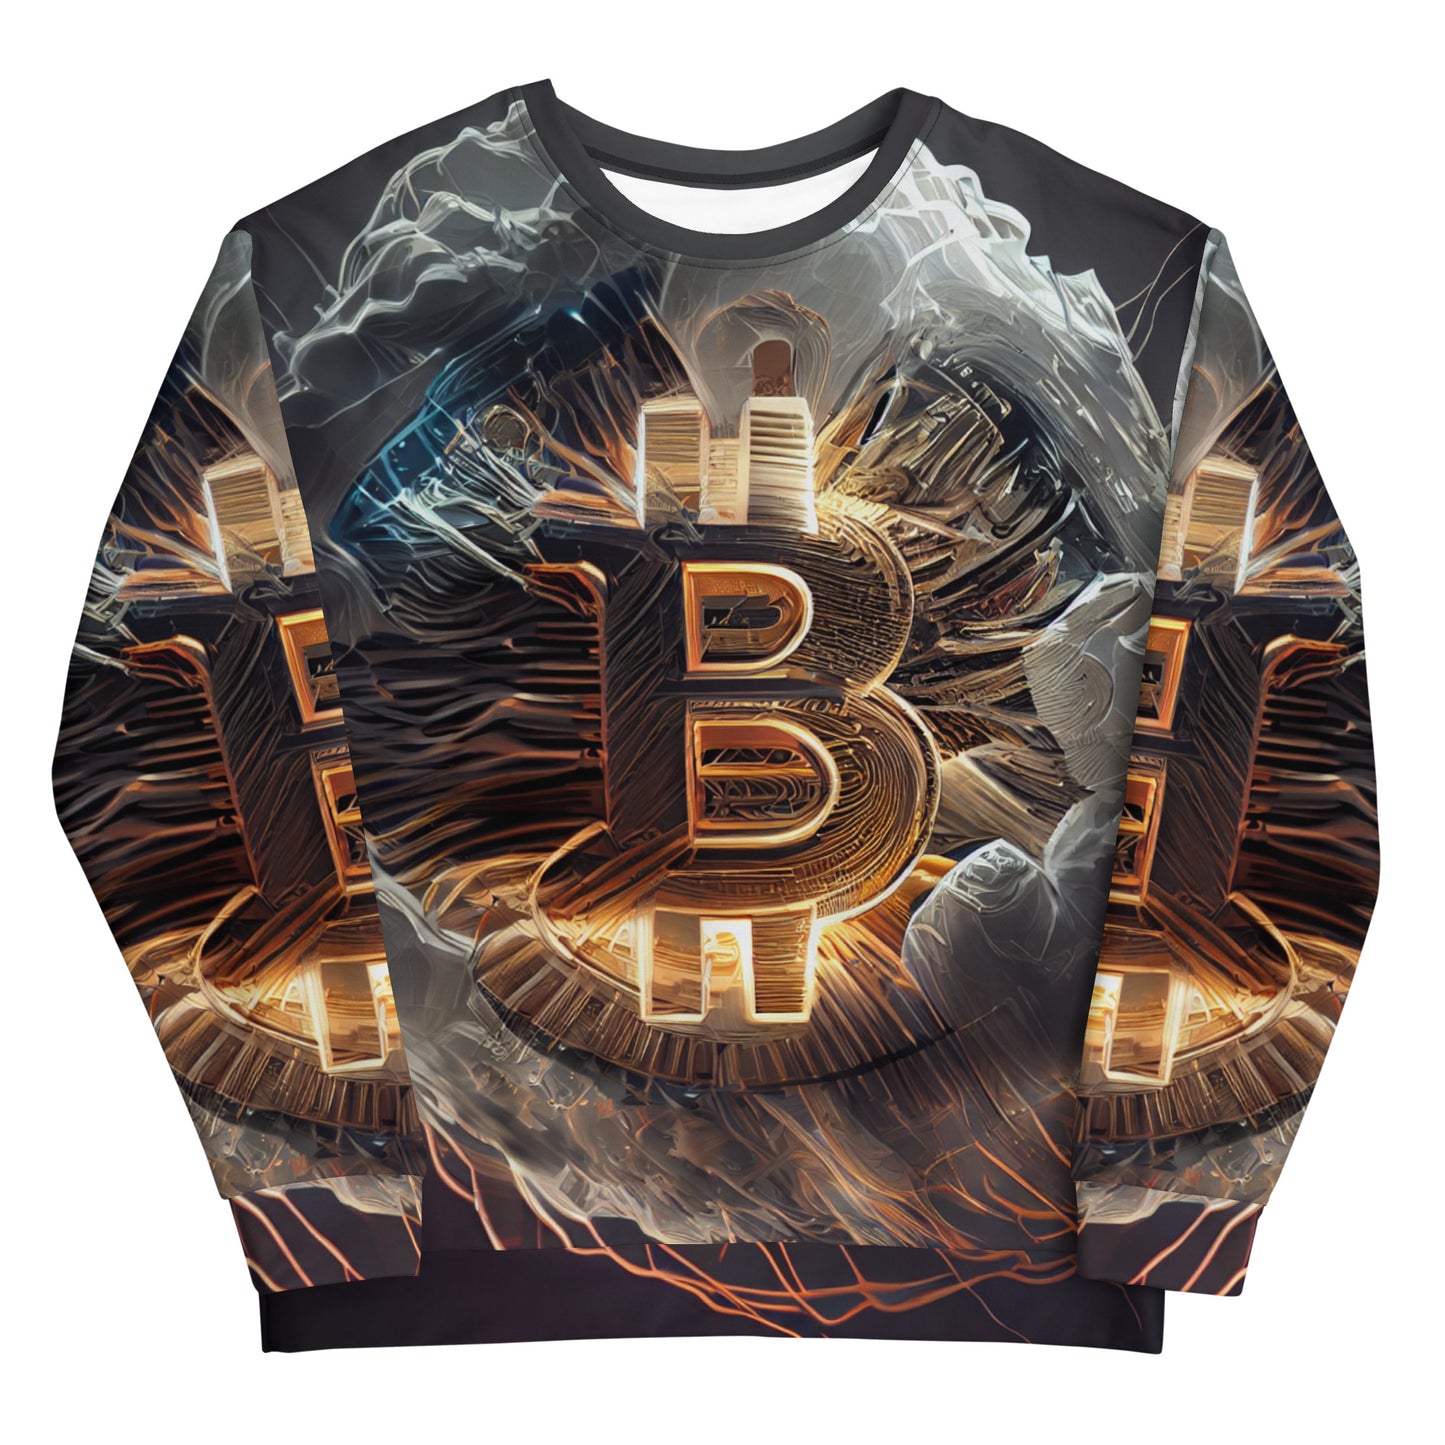 Bitcoin B Sweatshirt